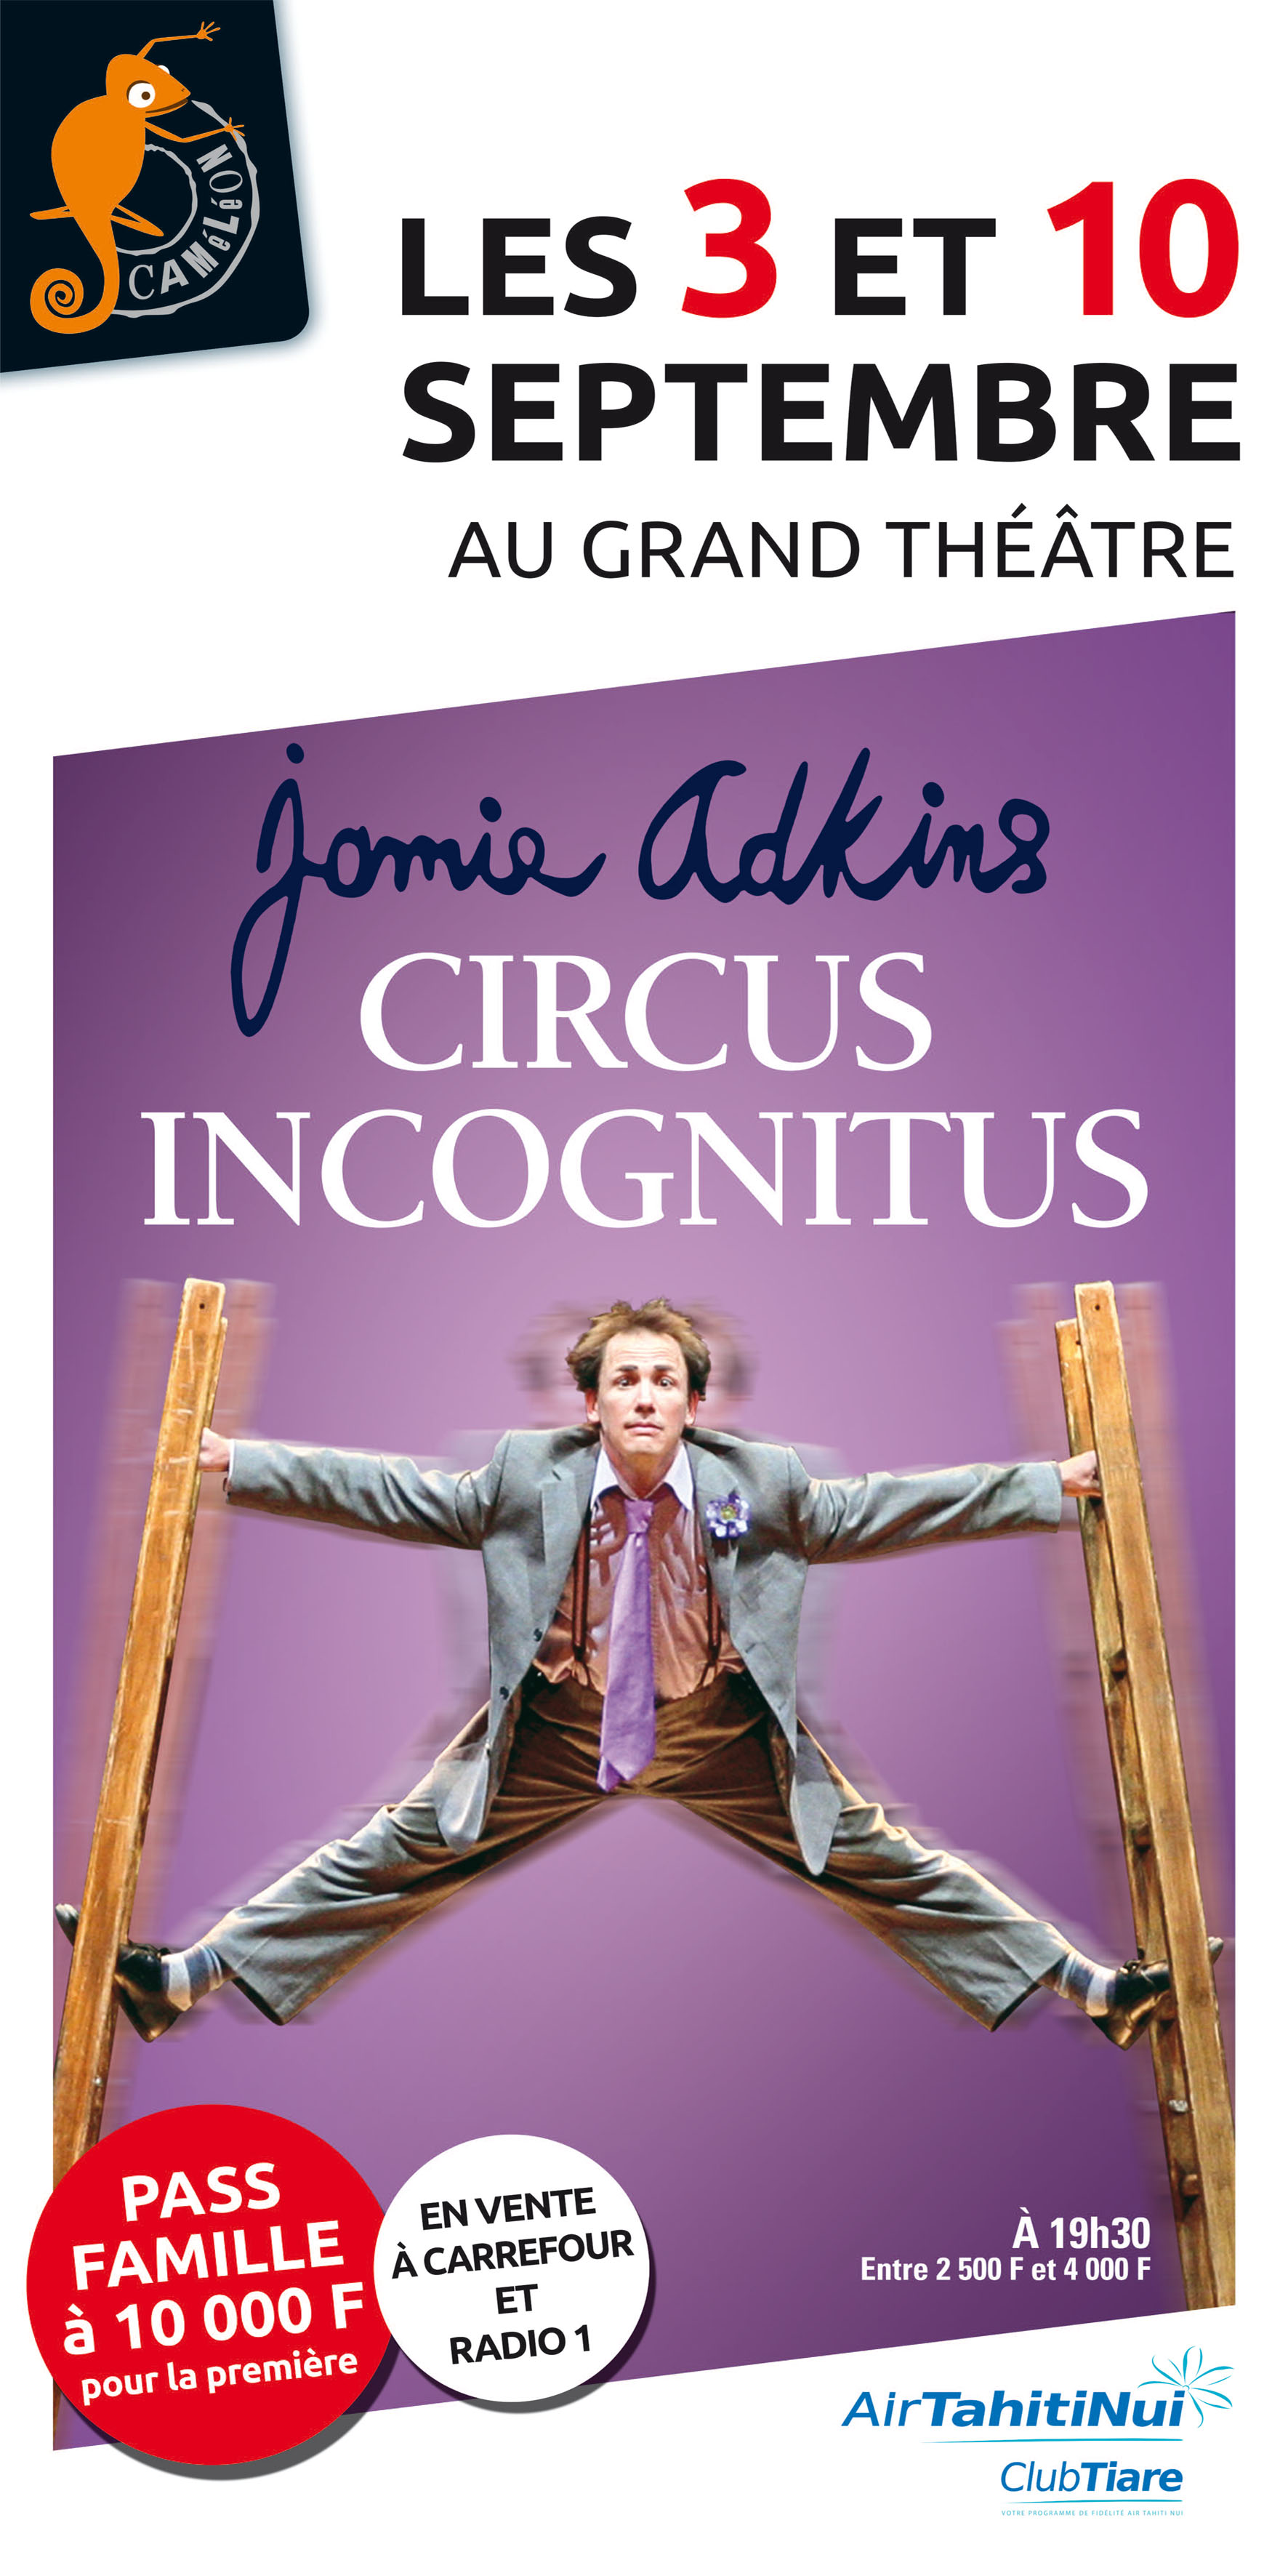 Le spectacle "Circus Incognitus" est porté par l'artiste Jamie Adkins, à la fois acrobate, clown et poète.